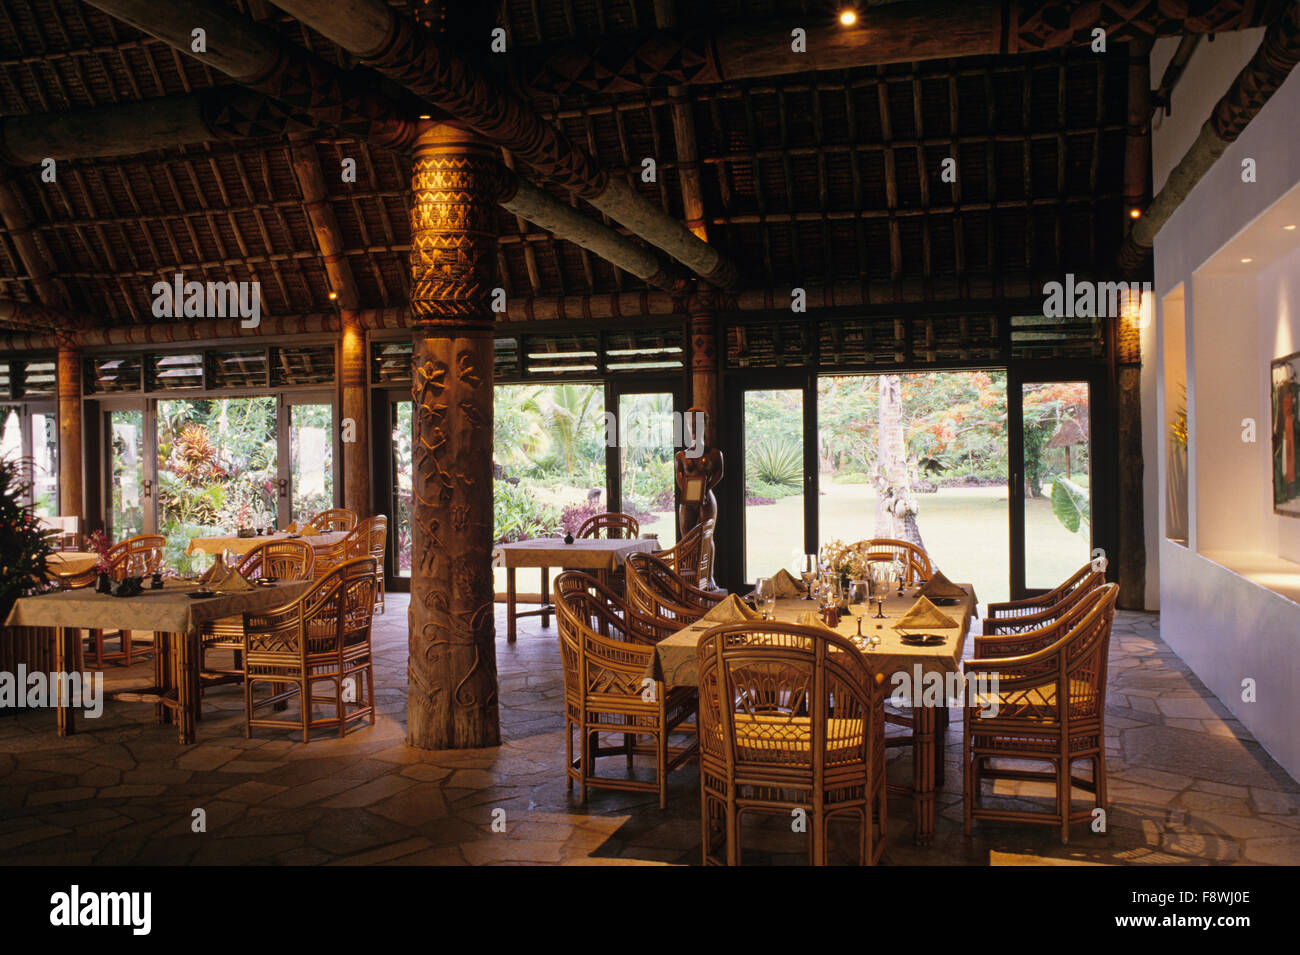 Fiji Islands, Wakaya Island, Wakaya Club, restaurant interior Stock Photo